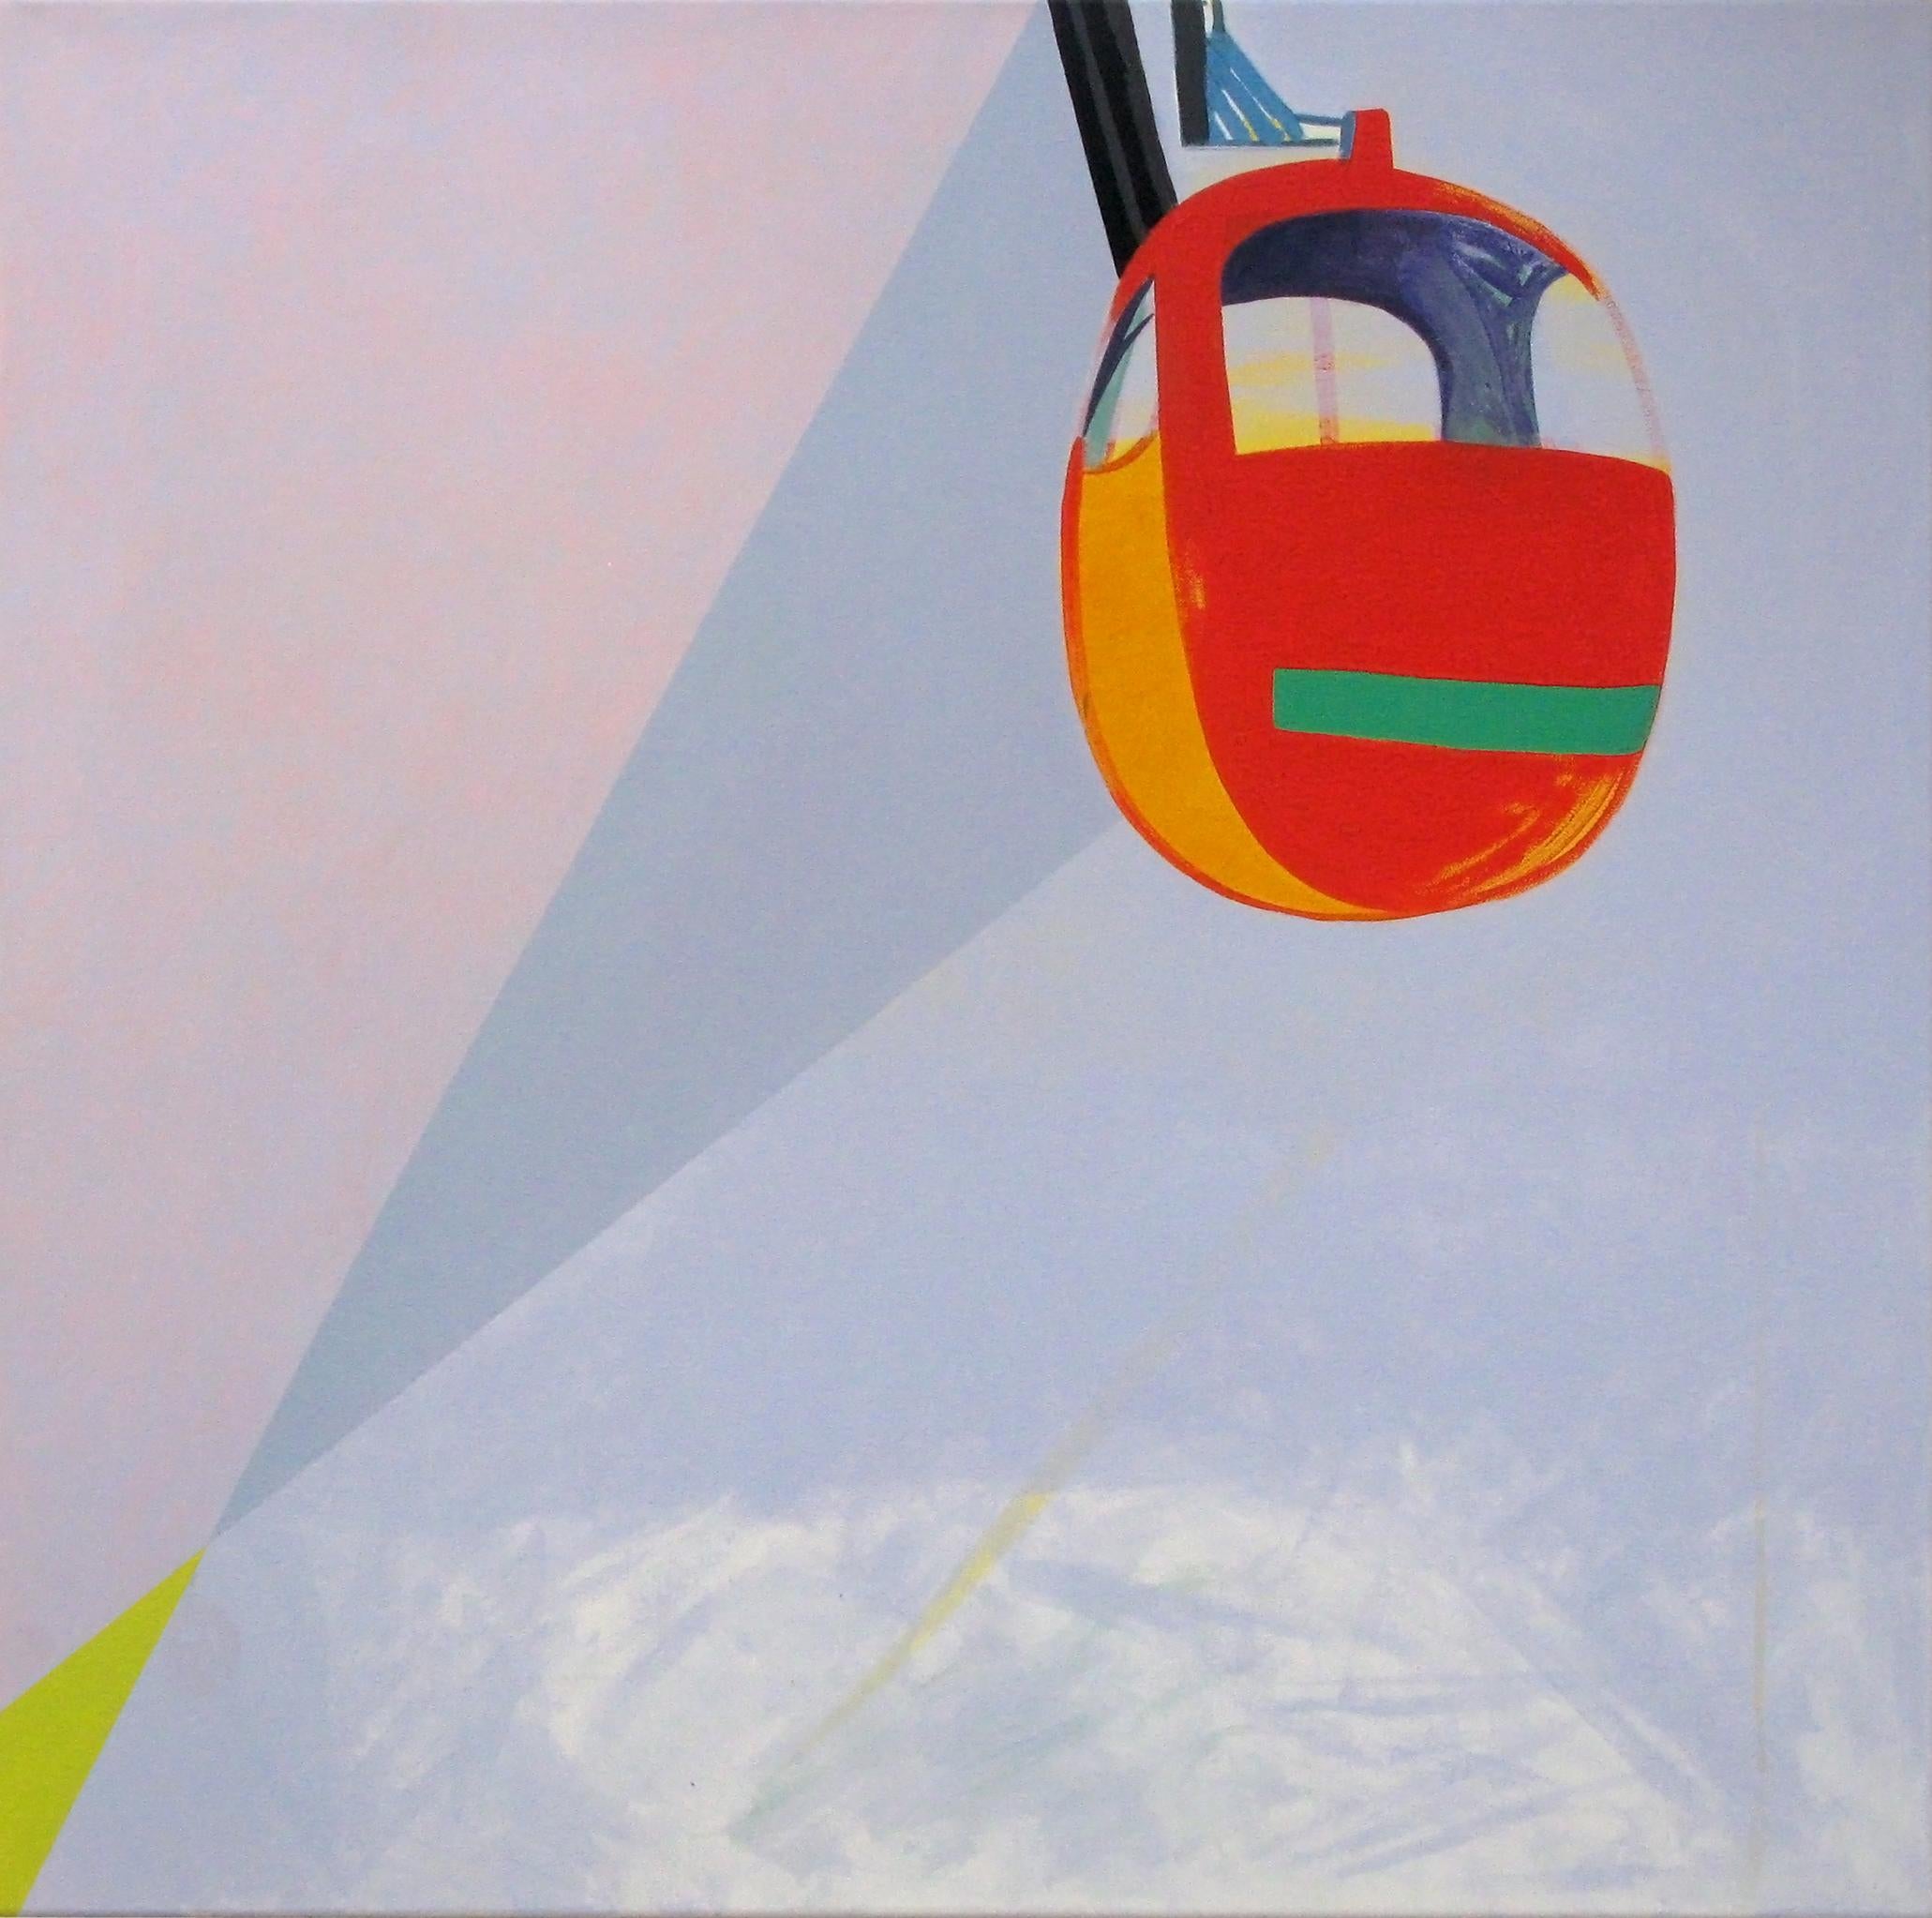 Nacelle - Peinture moderne de paysage et de montagnes, abstraite, joyeuse, pastel